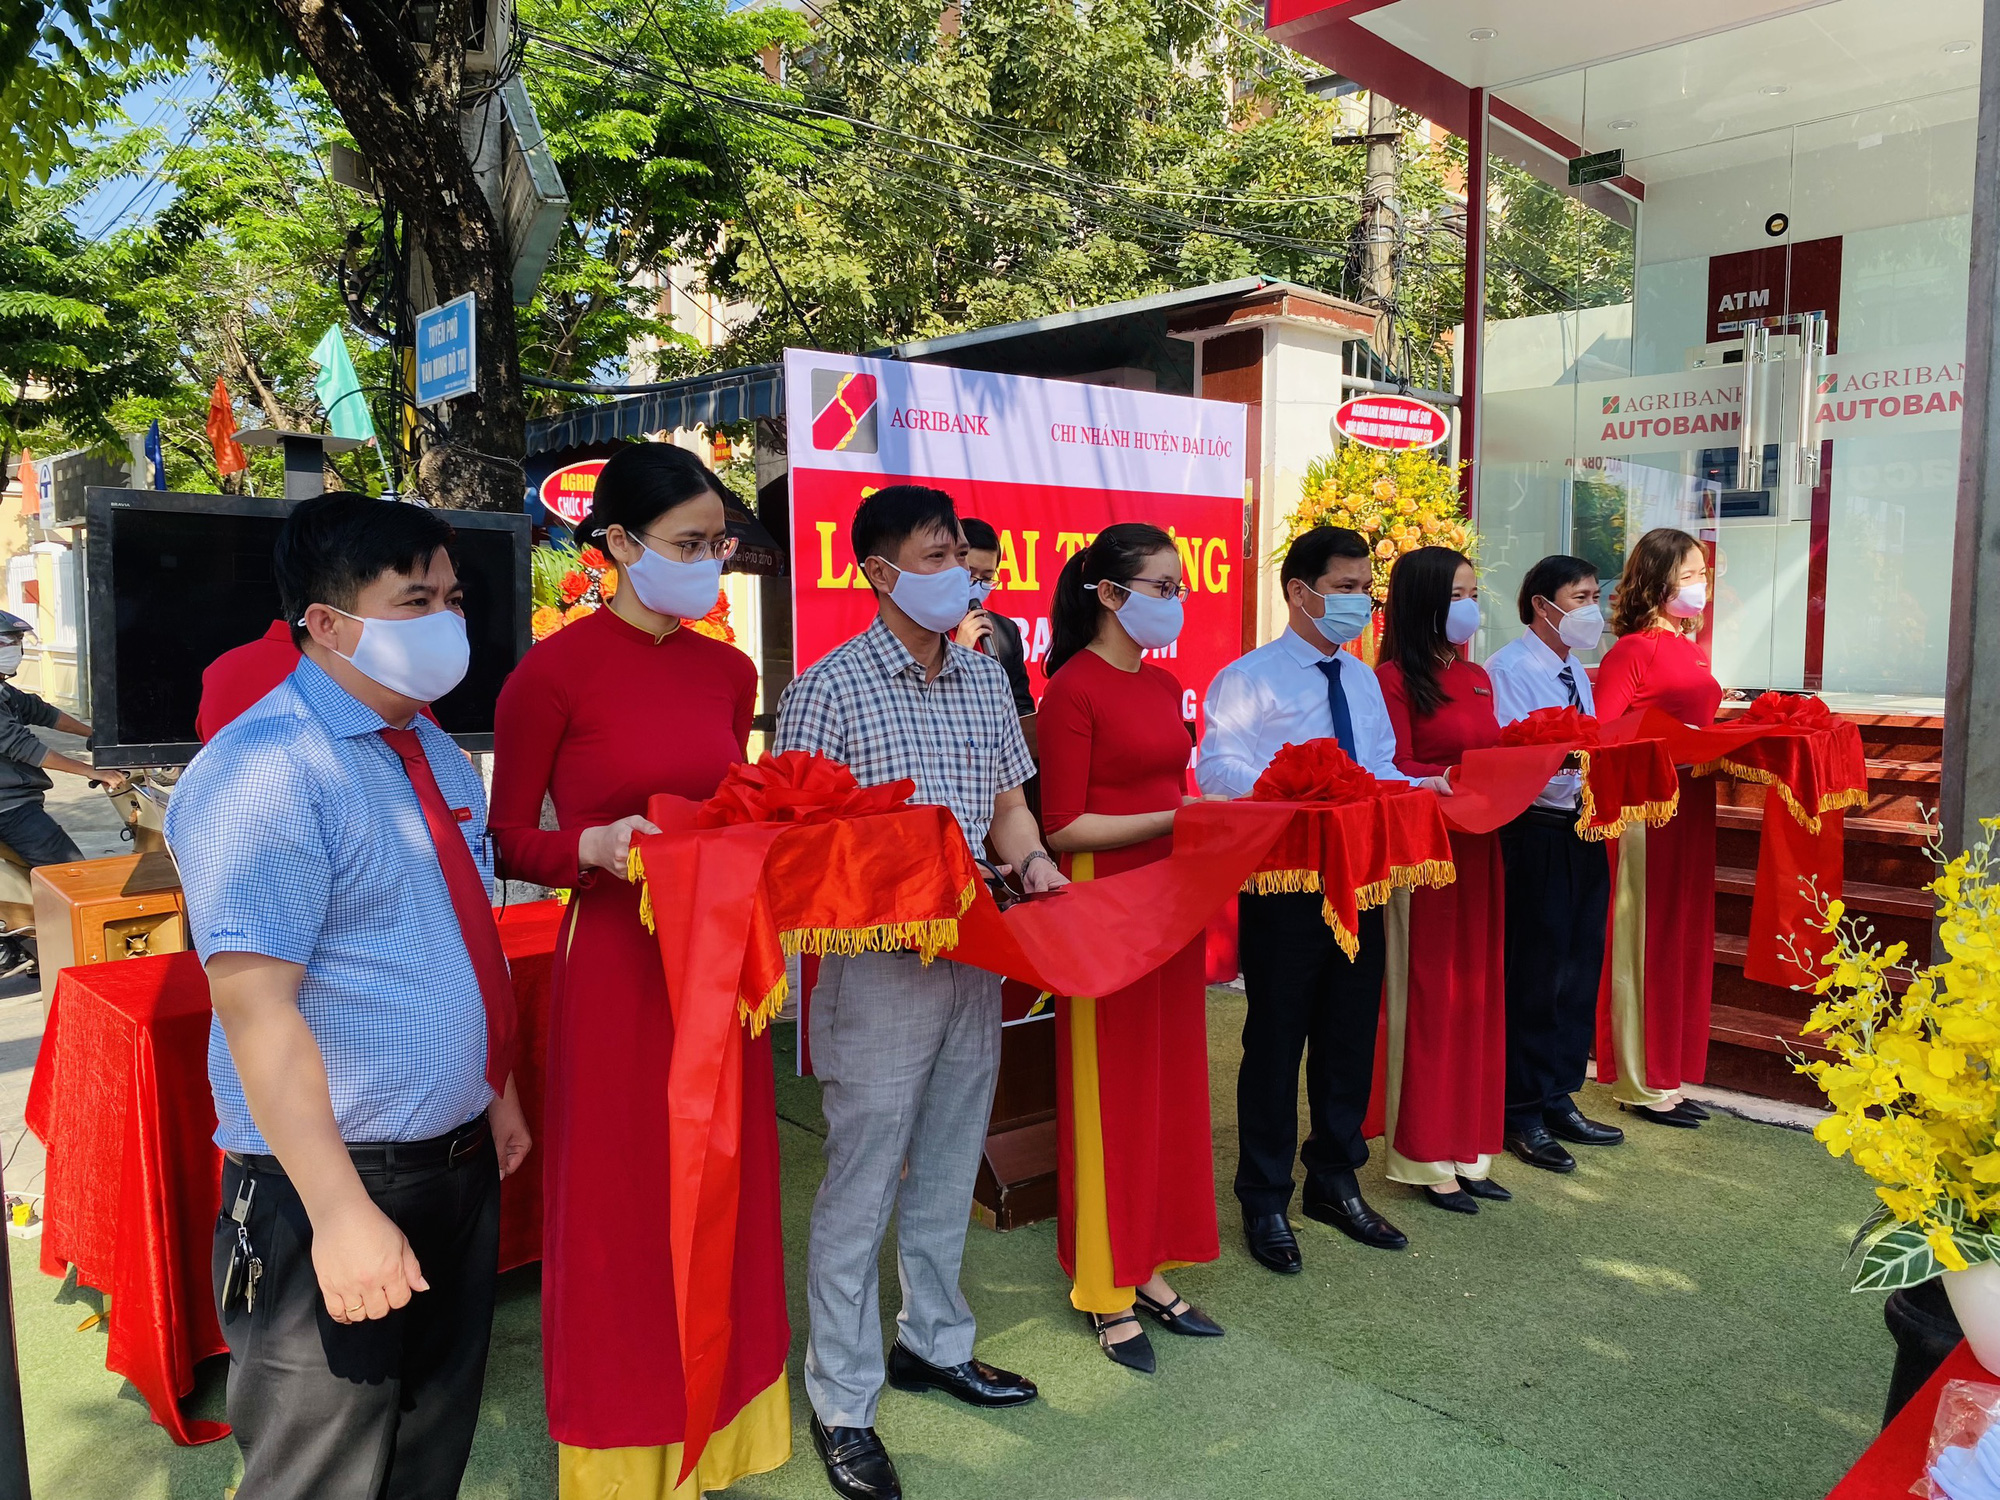 Quảng Nam: Agribank khai trương máy giao dịch tự động AutoBank tại huyện Đại Lộc - Ảnh 1.